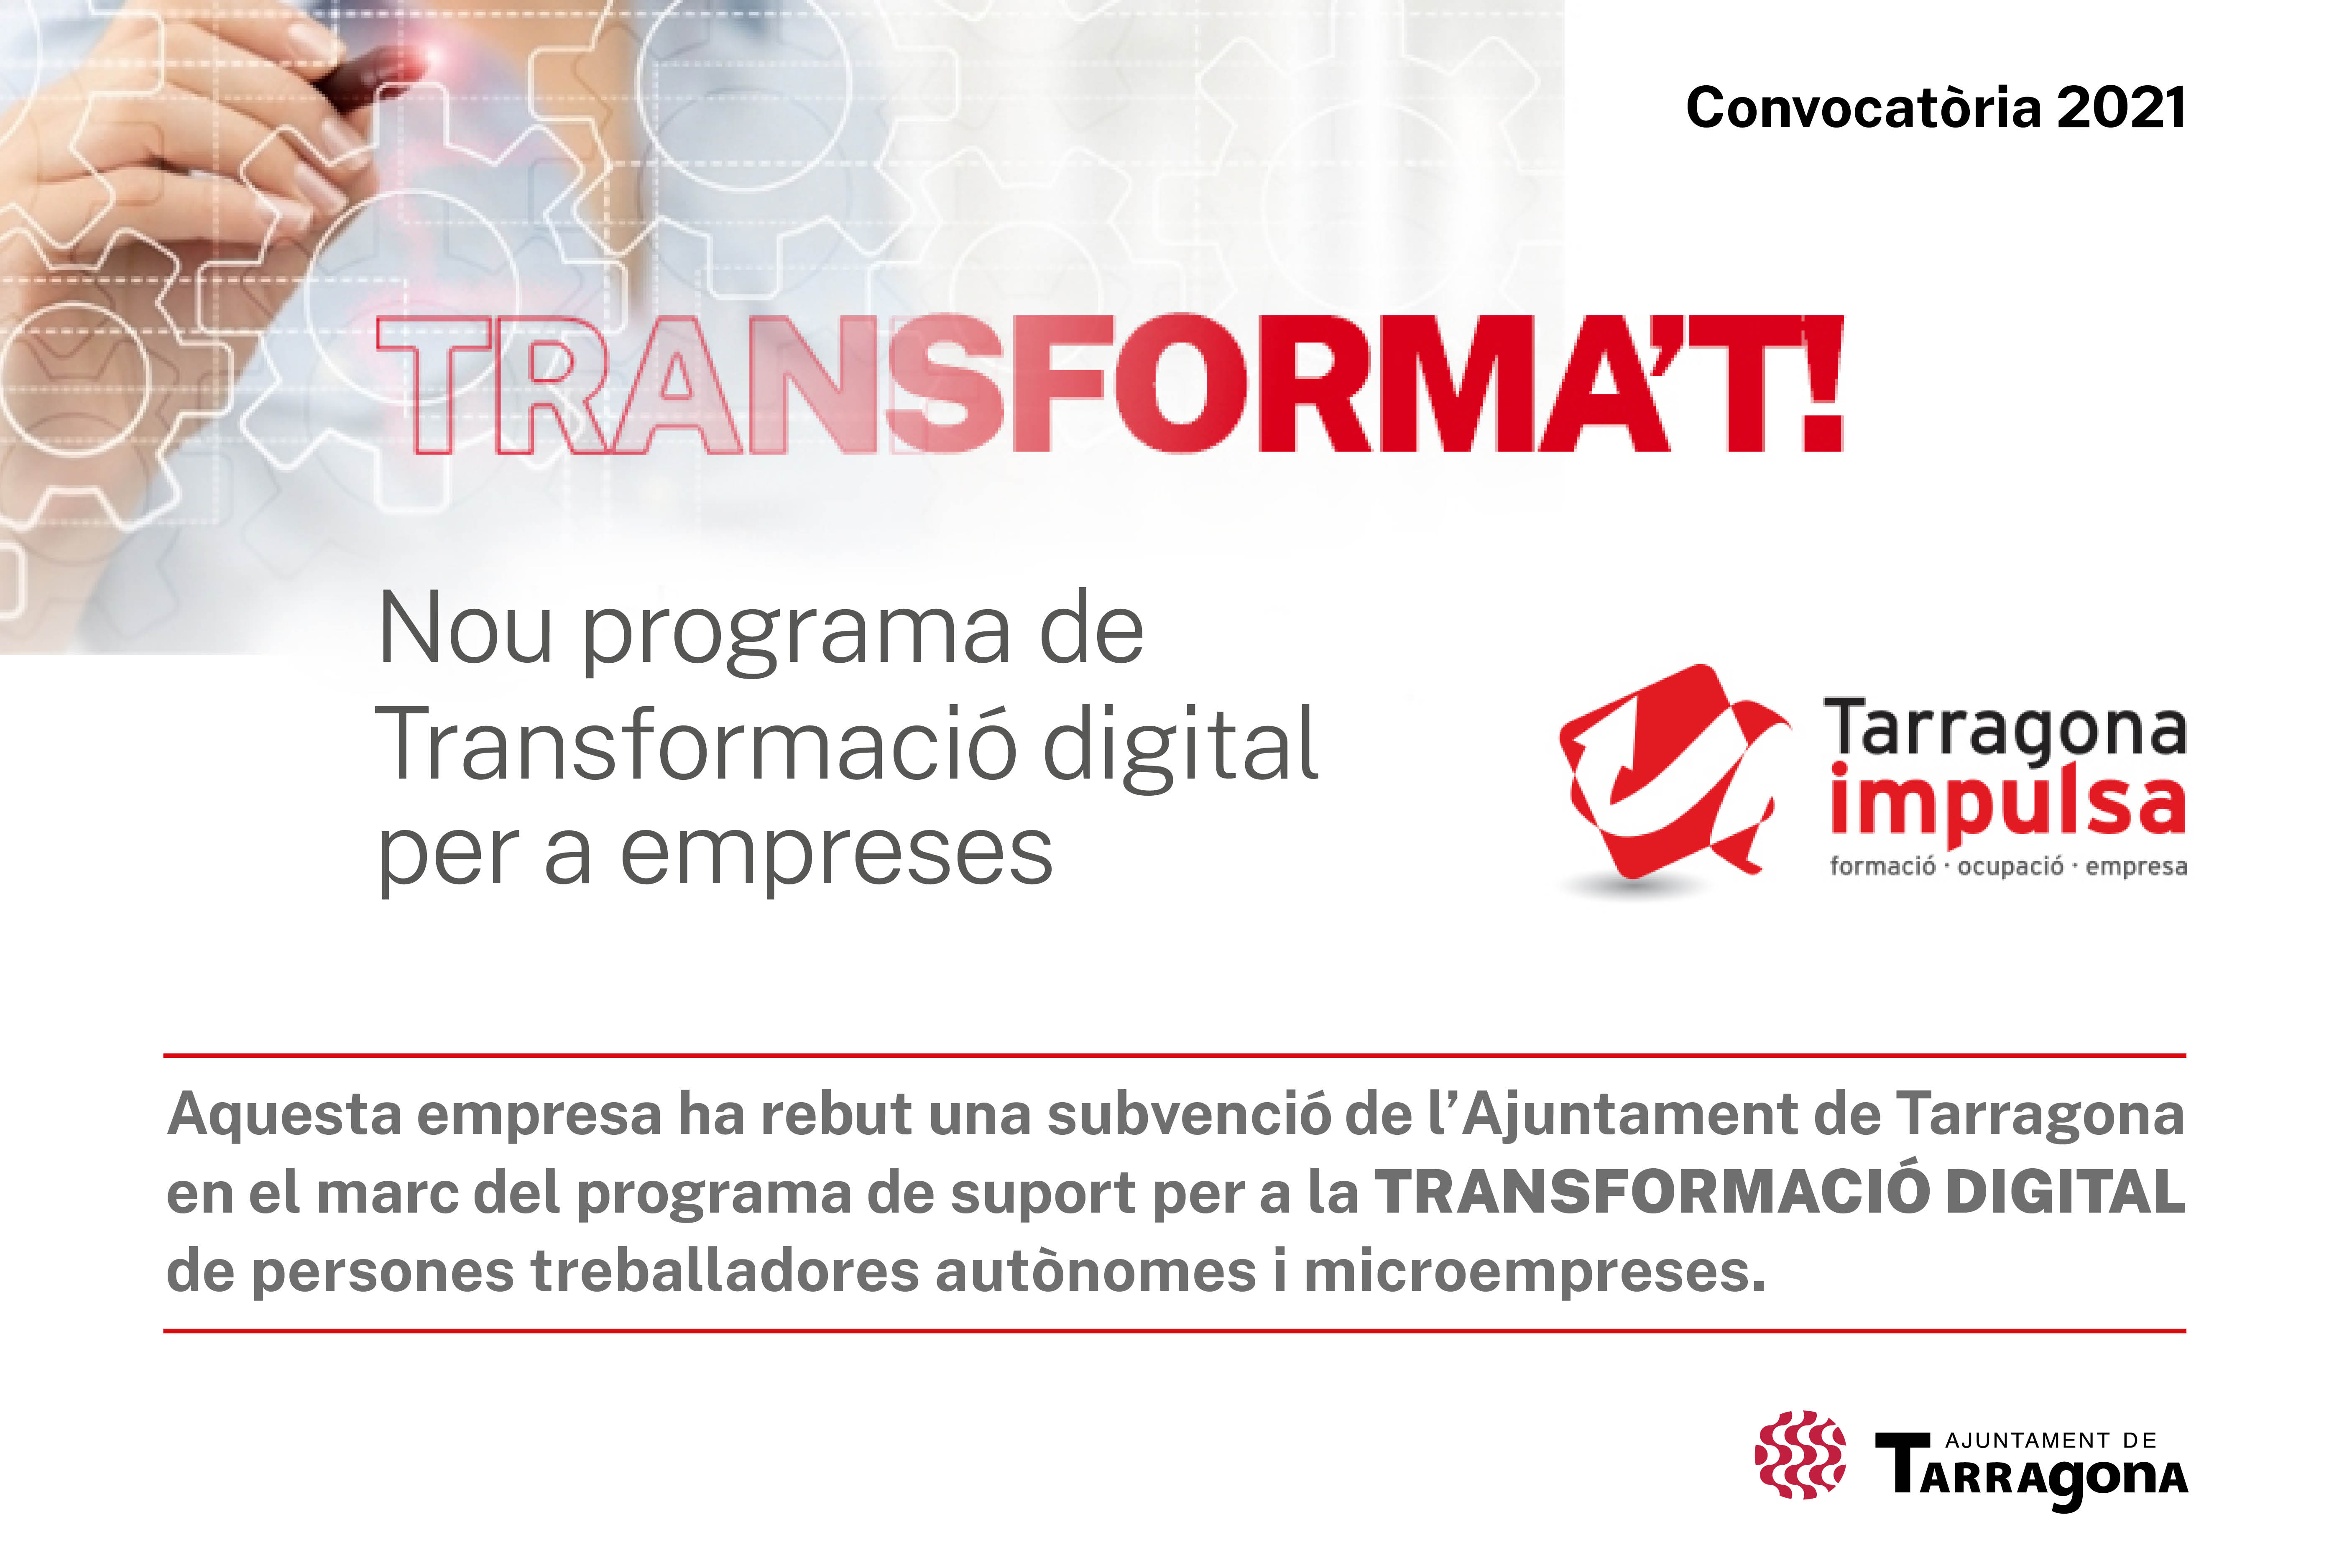 Progama de transformació digital per a empreses de l'Ajuntament de Tarragona - Convocatoria 2021